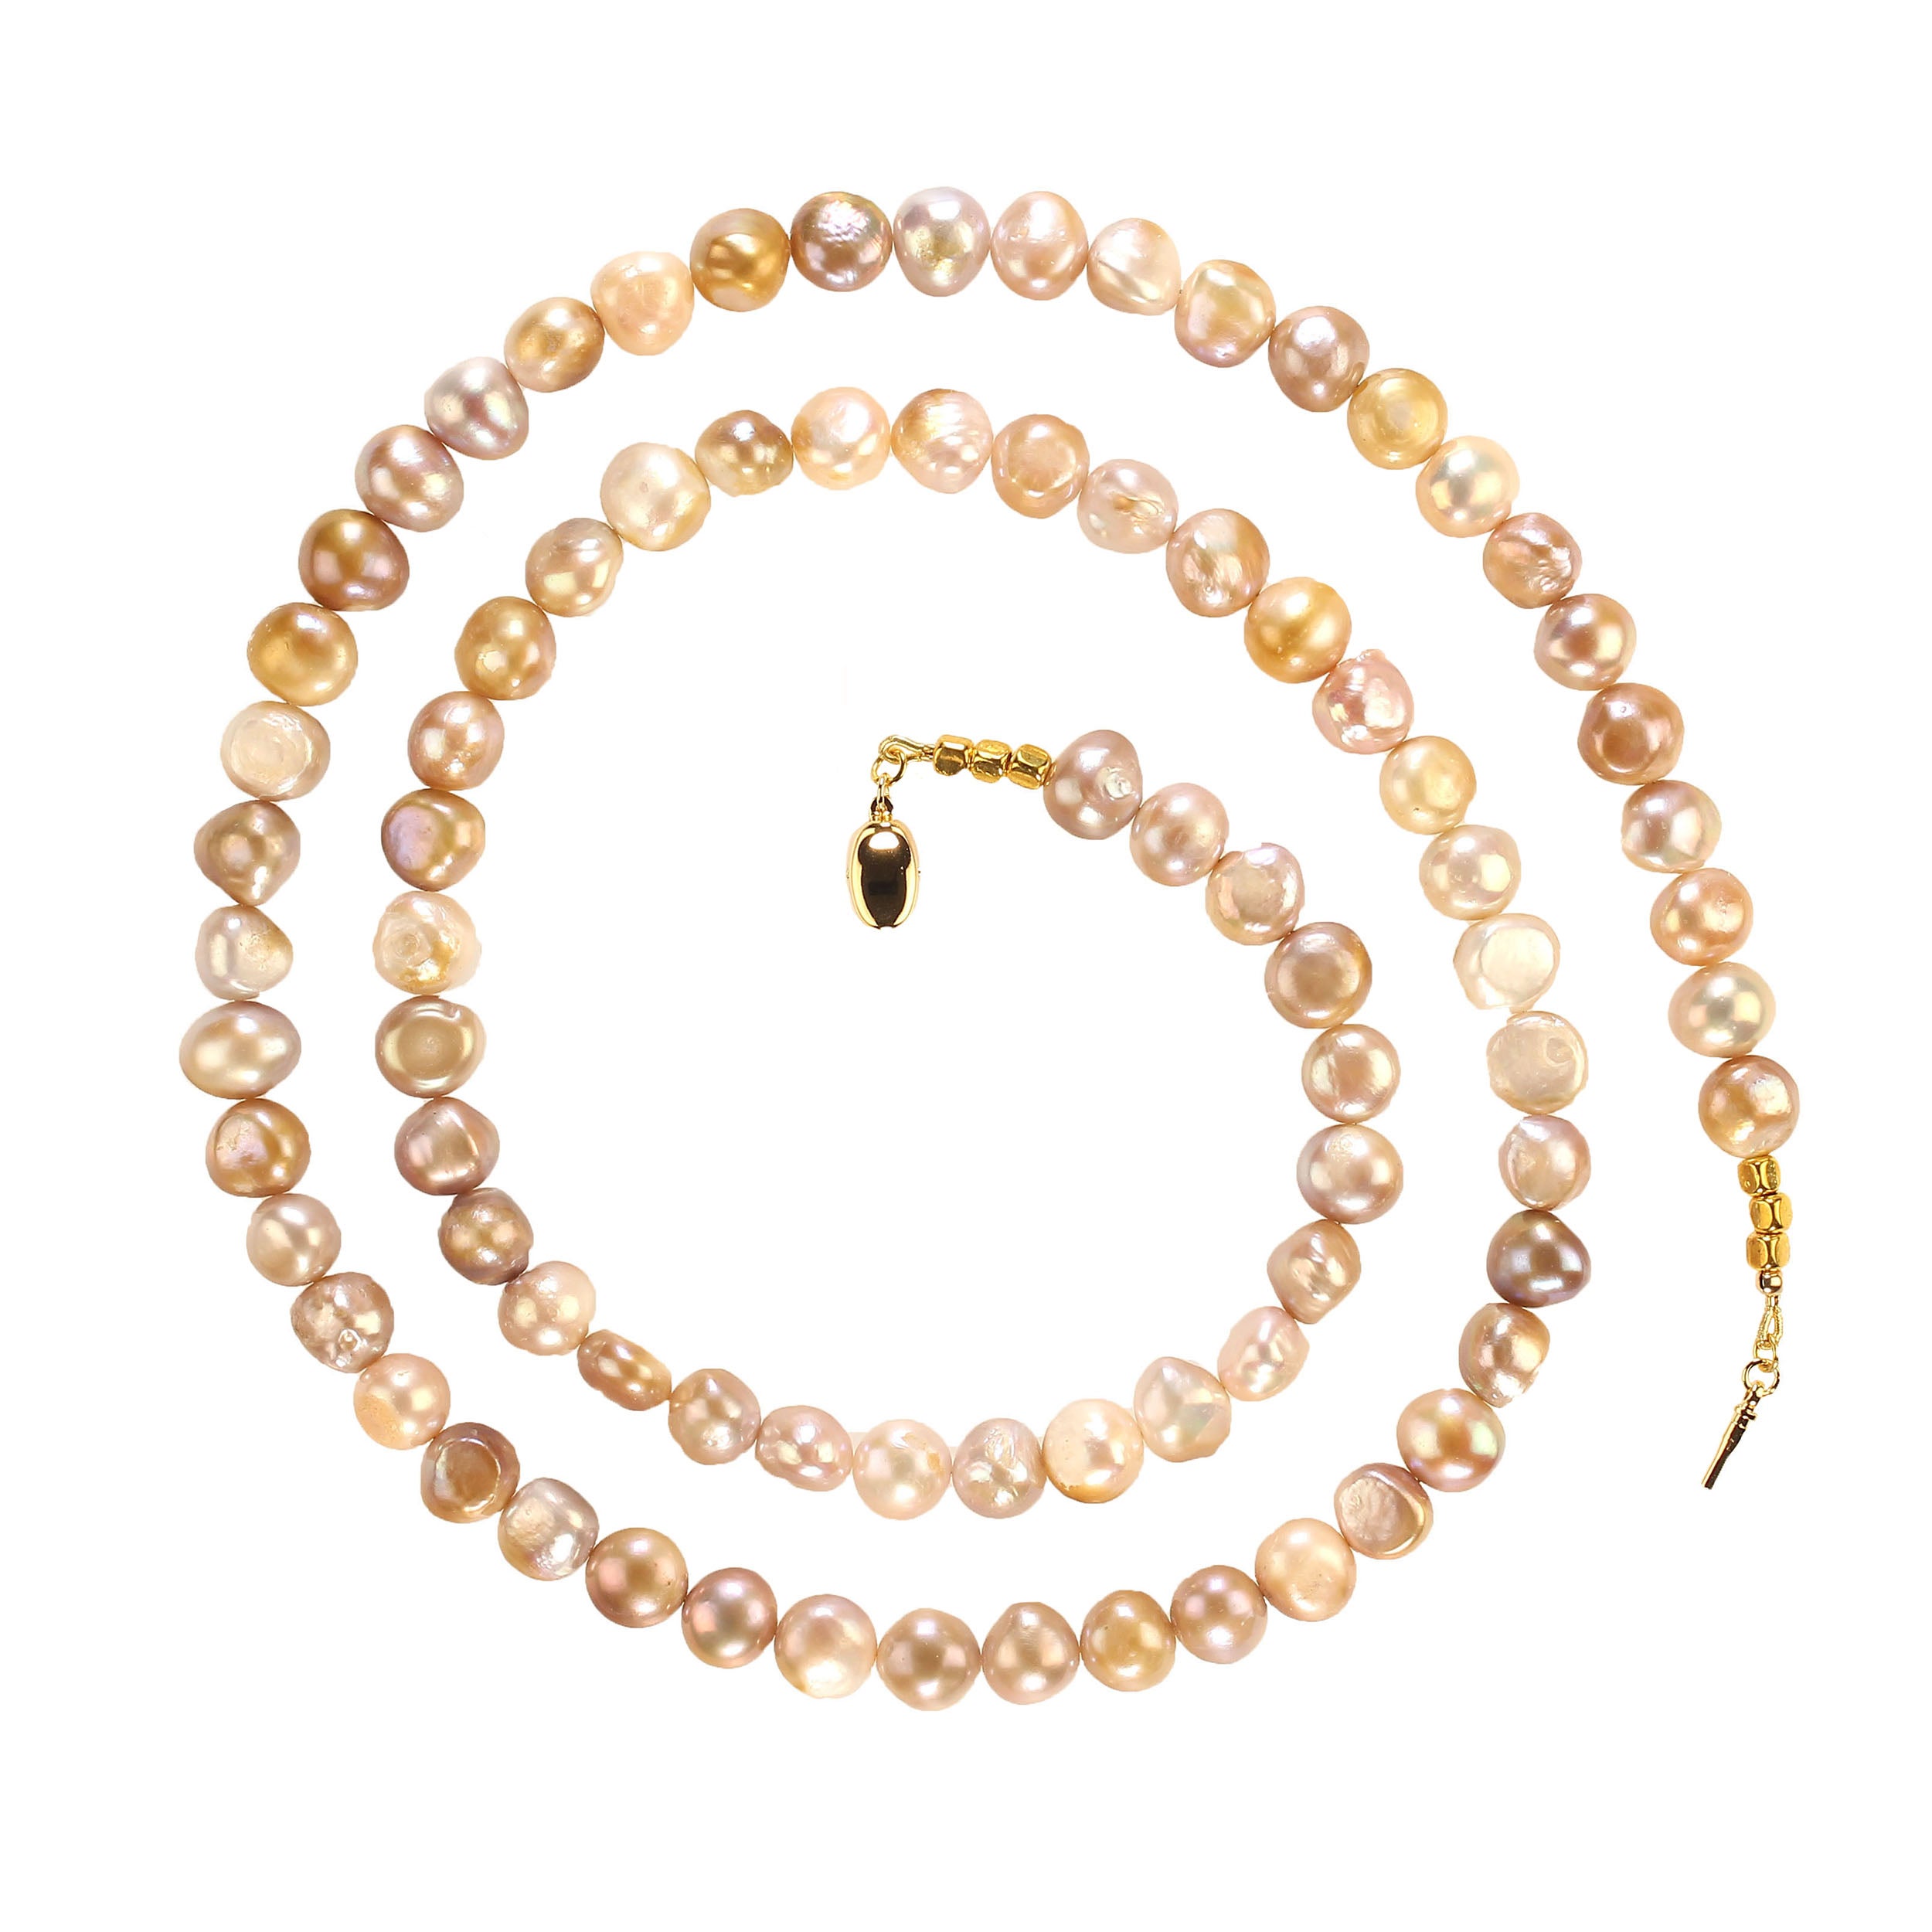 Wunderschöne und elegante 32-Zoll-Süßwasserperlenkette in Gold-, Mauve- und Grautönen.  Diese einzigartige 8-10 mm große Perlenkette ist wunderschön. Die leuchtenden Perlen sind ein wahrer Augenschmaus.  Bei 32 Zentimetern kann es sich durchaus um